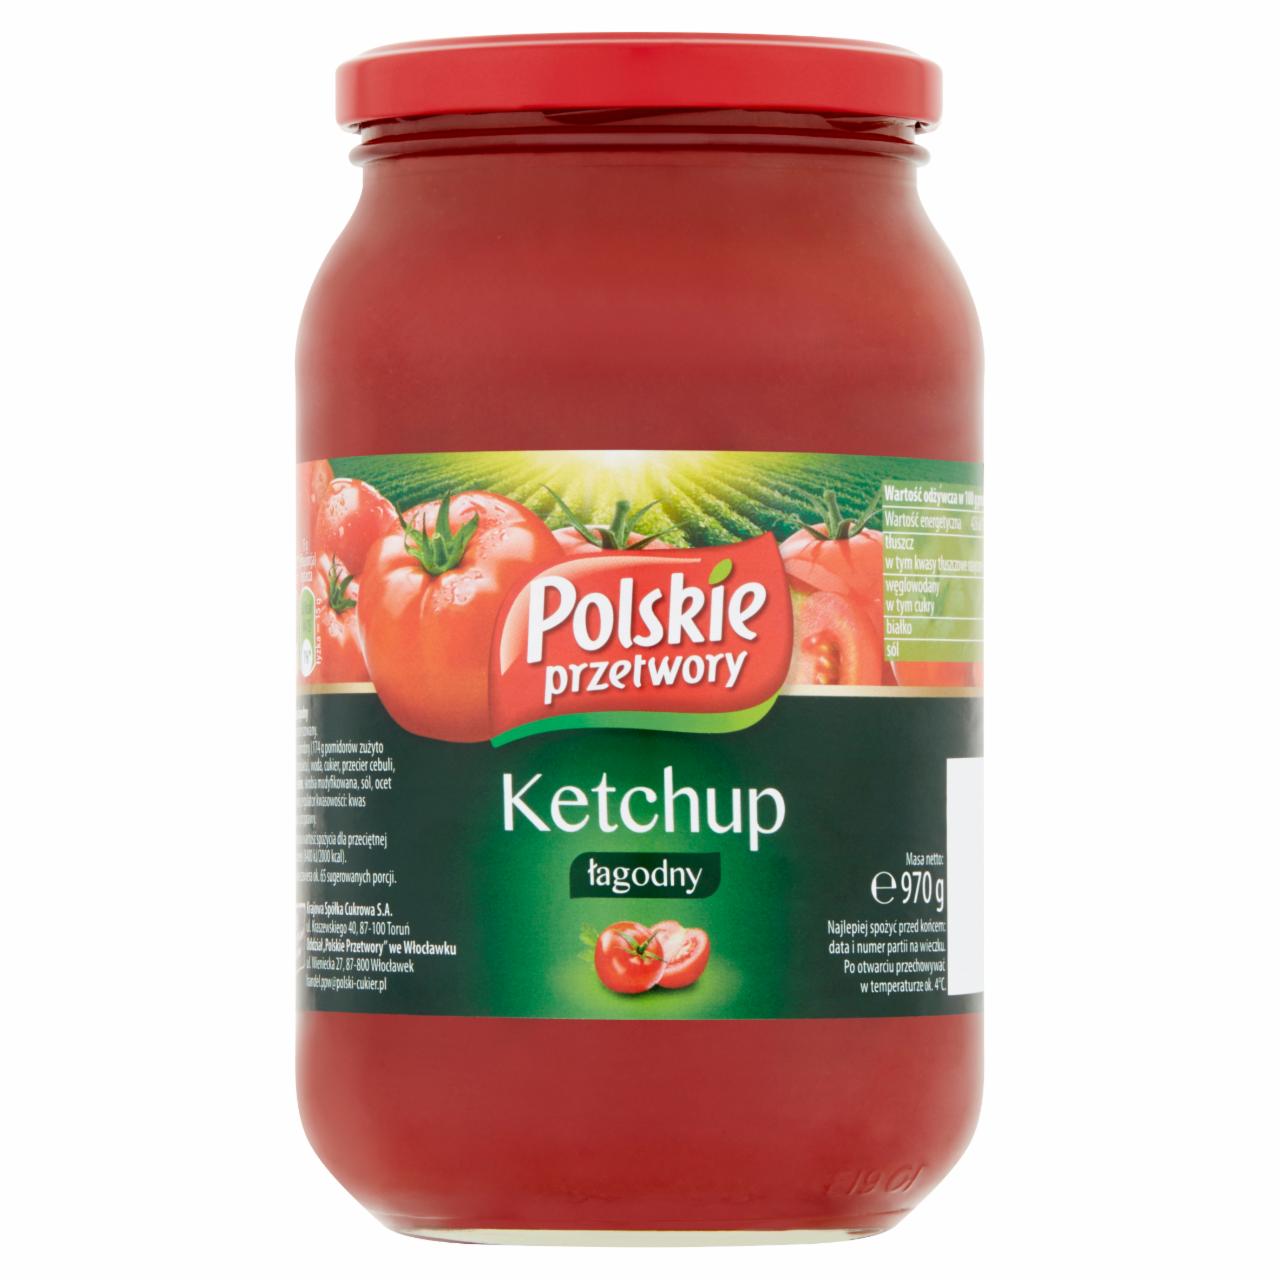 Zdjęcia - Polskie przetwory Ketchup łagodny 970 g